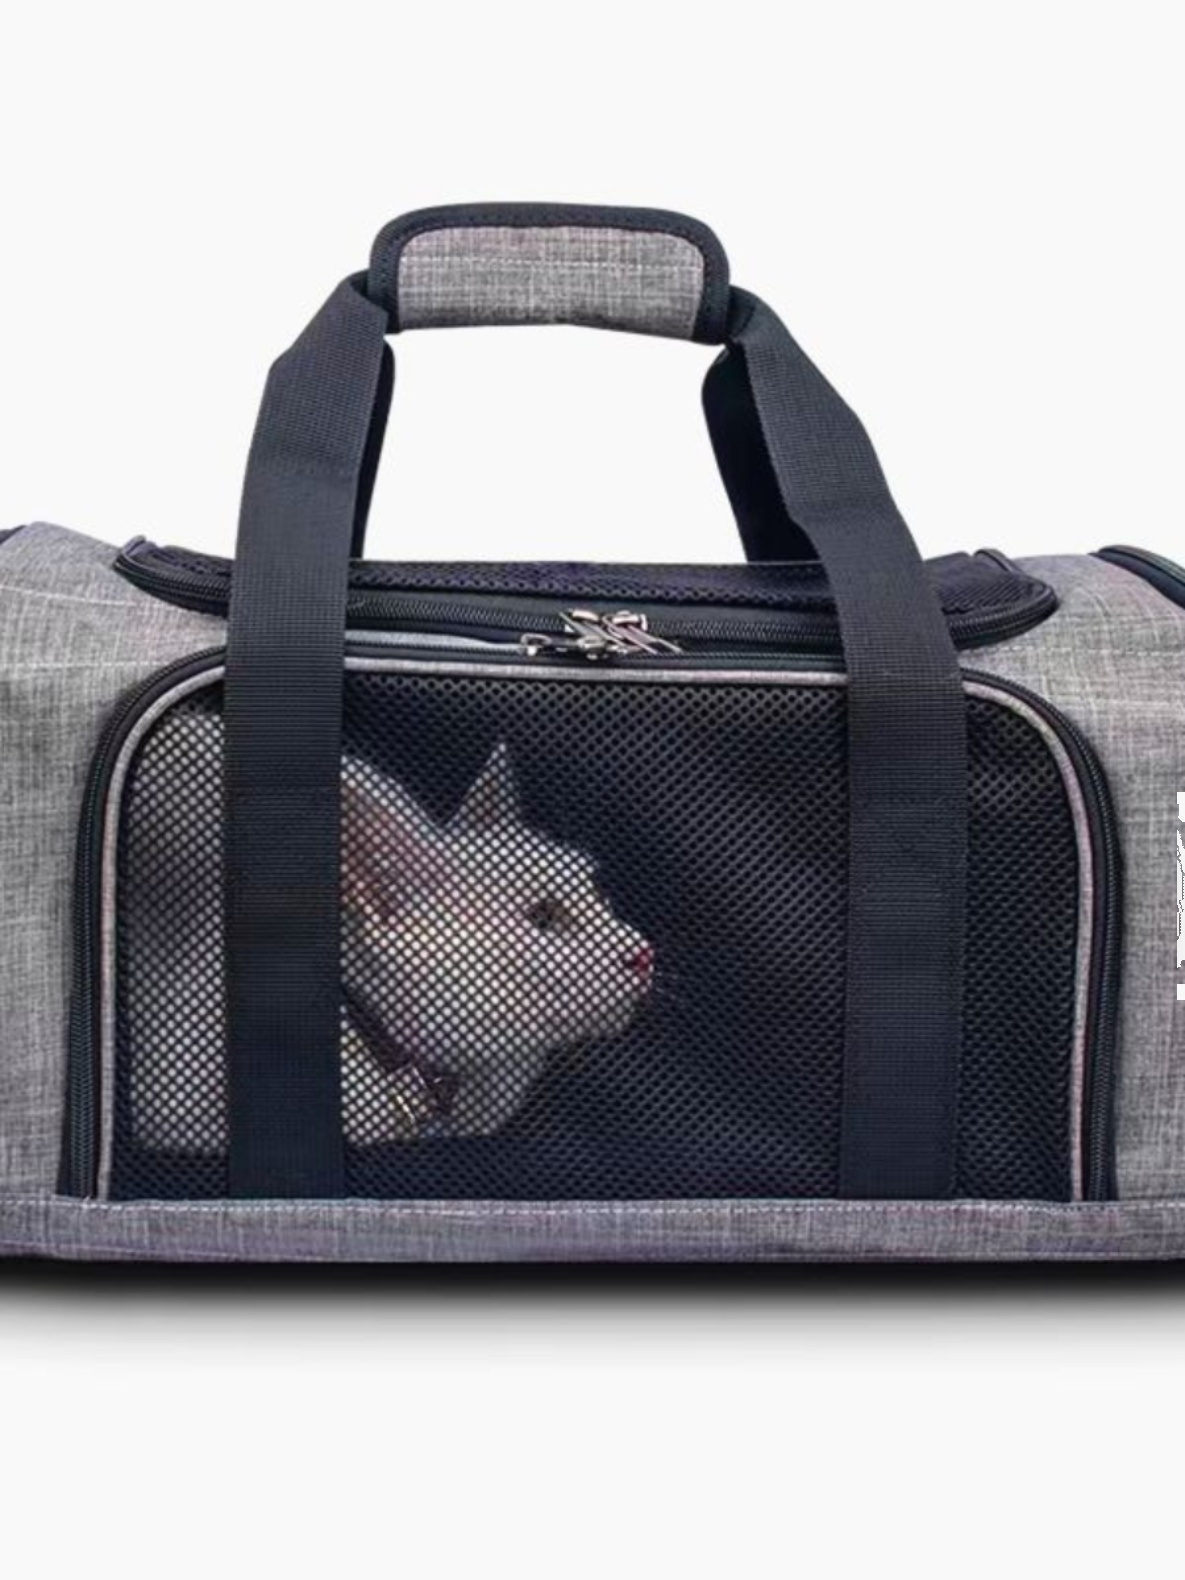 航空貓包寵物包外出便攜手提斜挎貓咪絕育包車載大容量透氣可摺疊  灰色 偏深色  WAKYtu (8.3折)